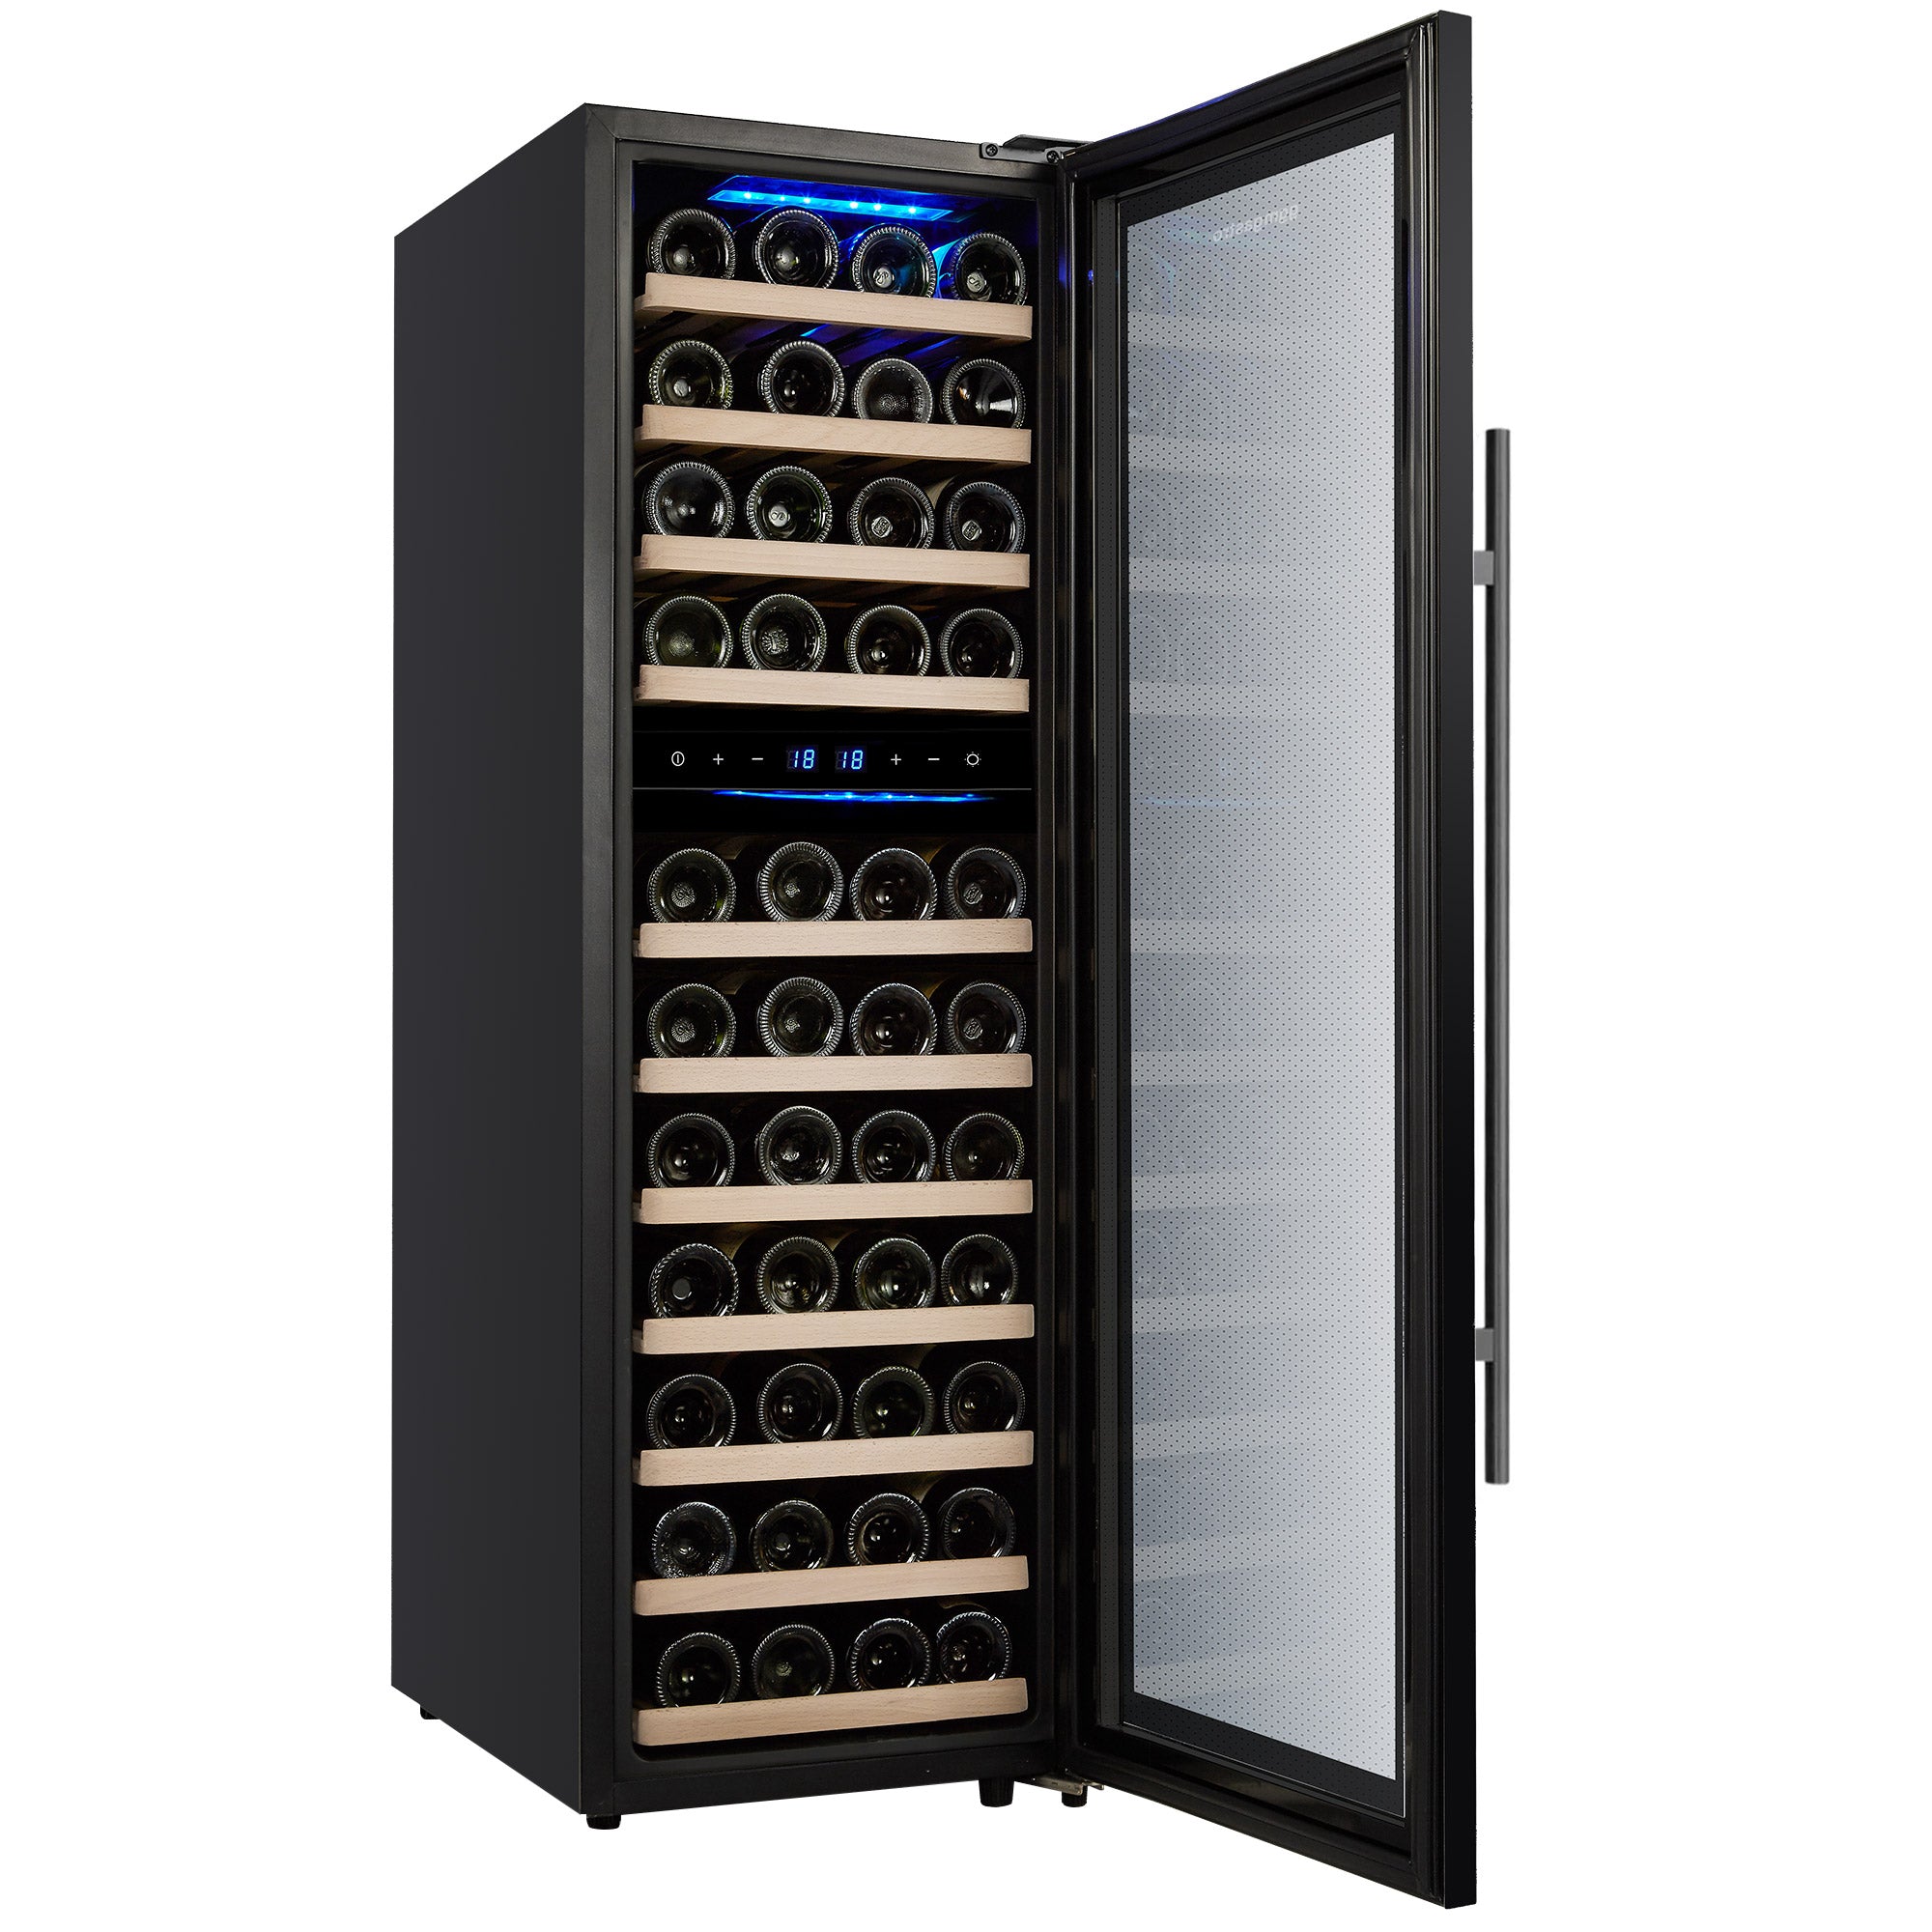 Vinkjøleskap - 139 liter - svart / med 2 klimasoner